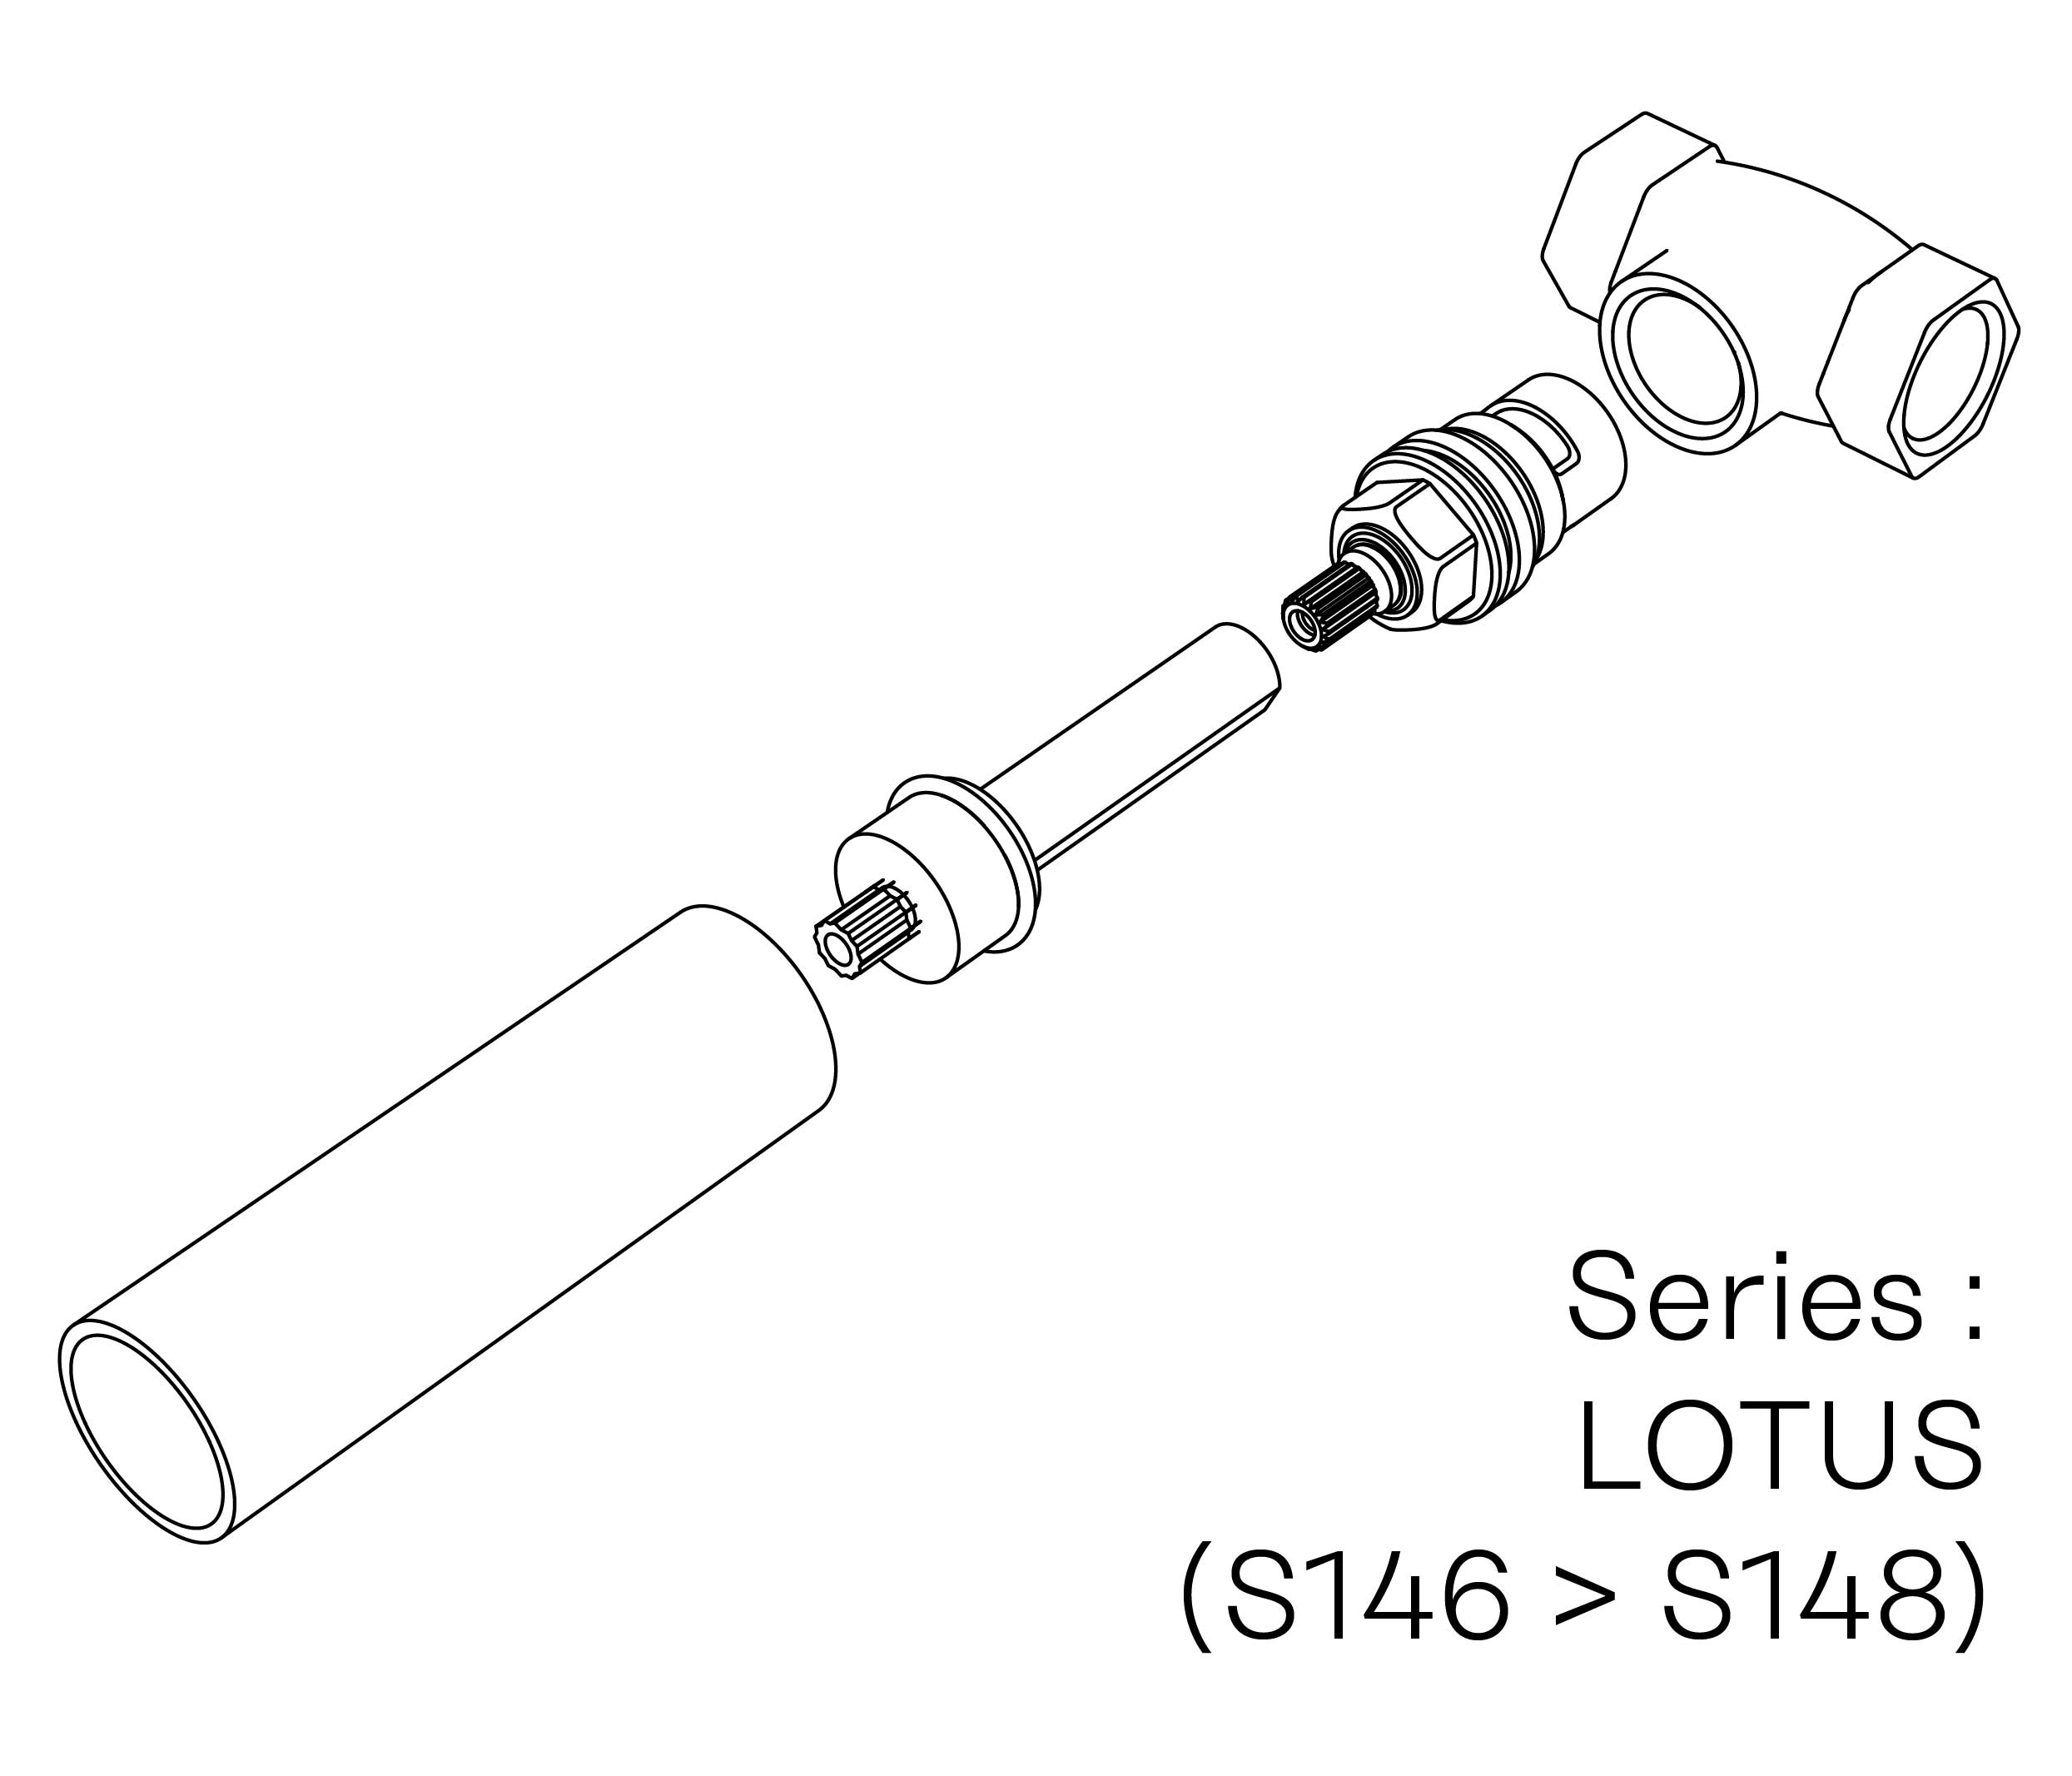 S00-27K29C Kit #7 for W-M valve 3/4″, 1/4 turn, Right